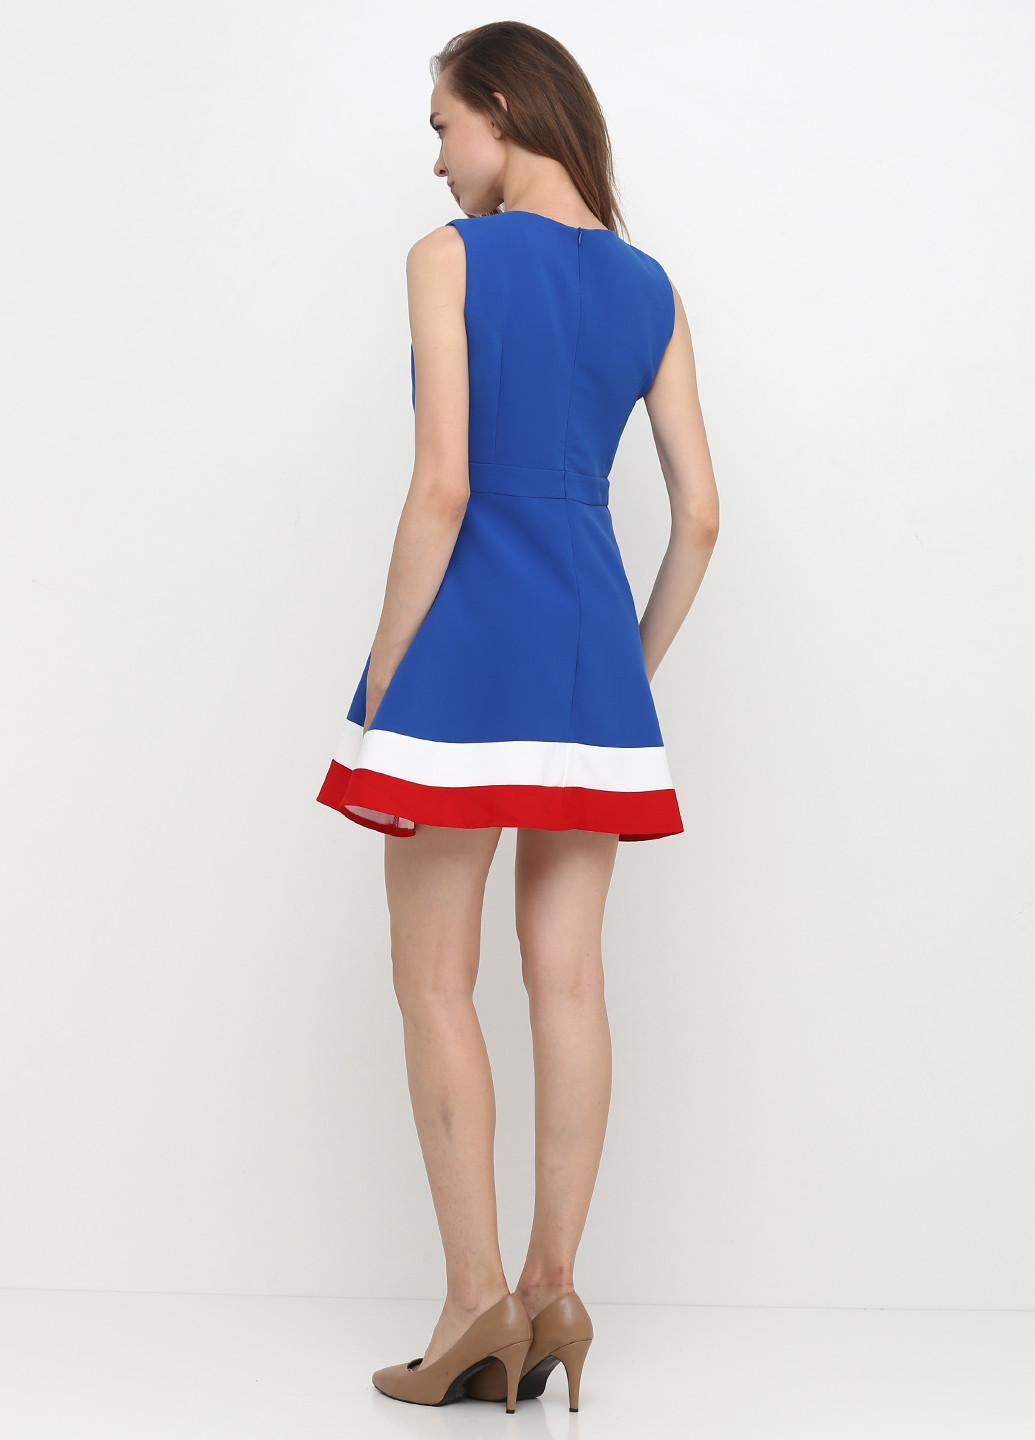 Синее коктейльное платье с юбкой-солнце Exclusive collection однотонное